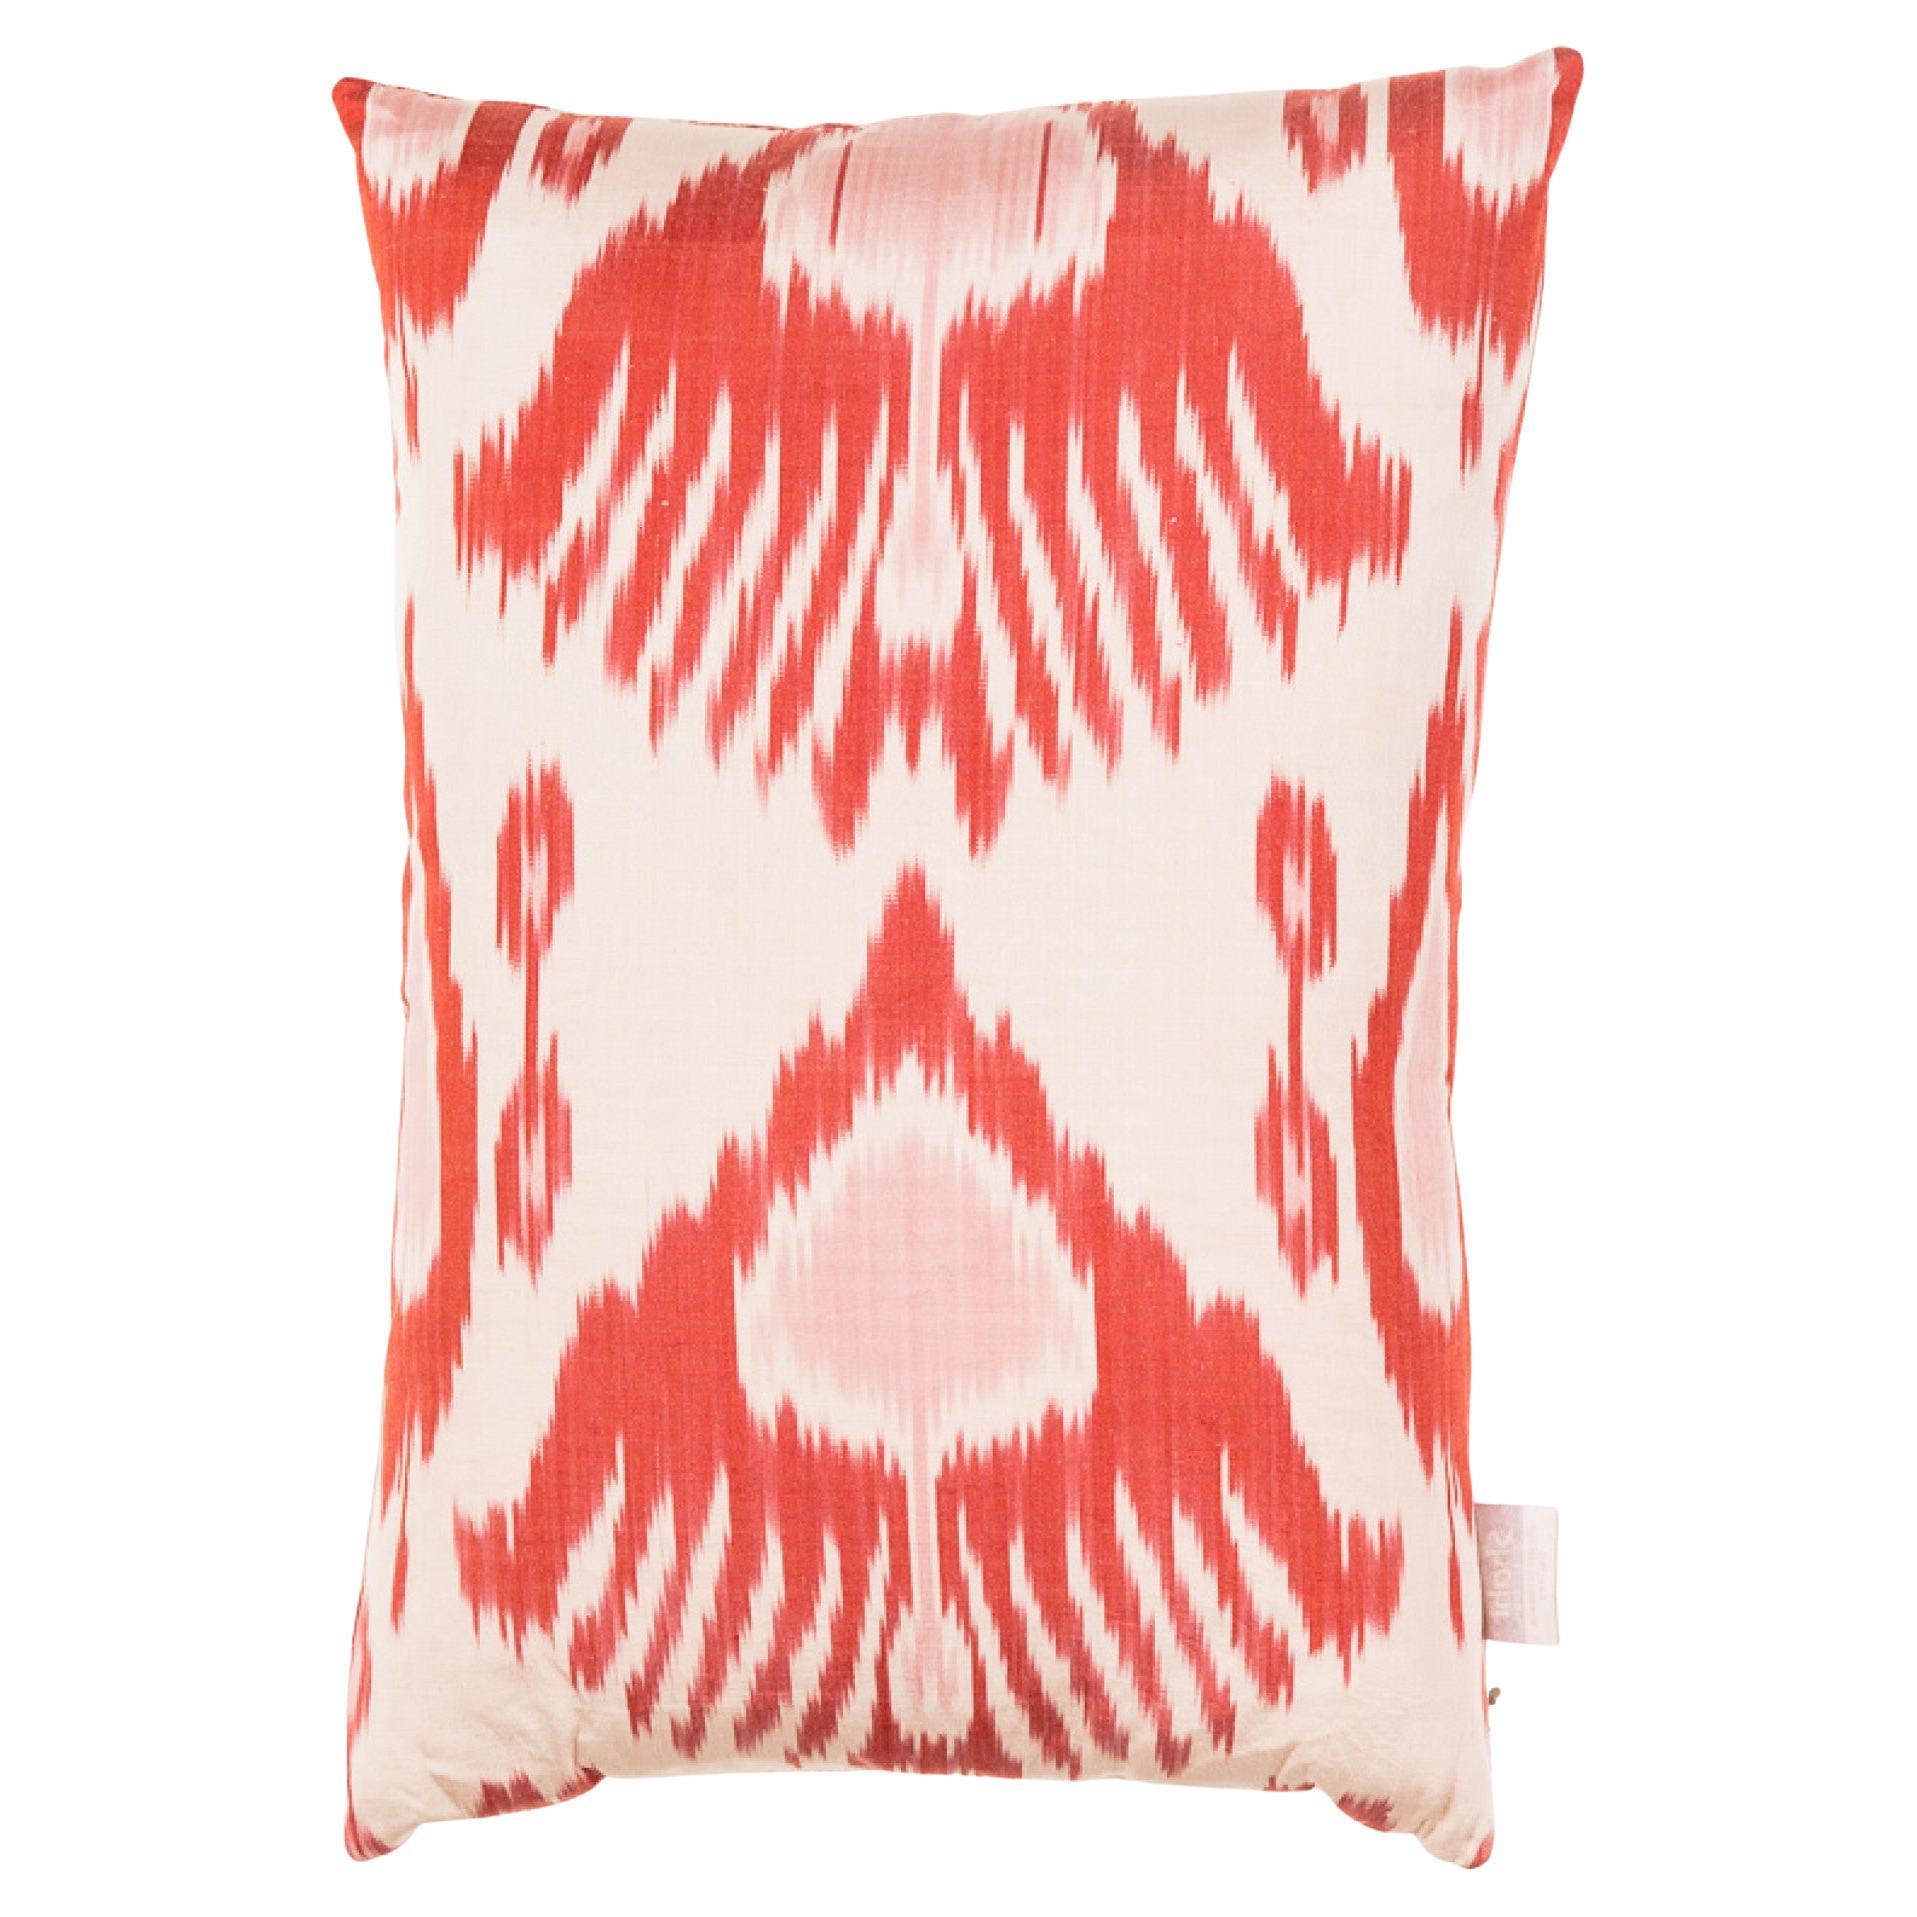 %100 Silk & Natural Dye, Ikat Cushion Cover, Uzbekistan Modern Pillow  For Sale